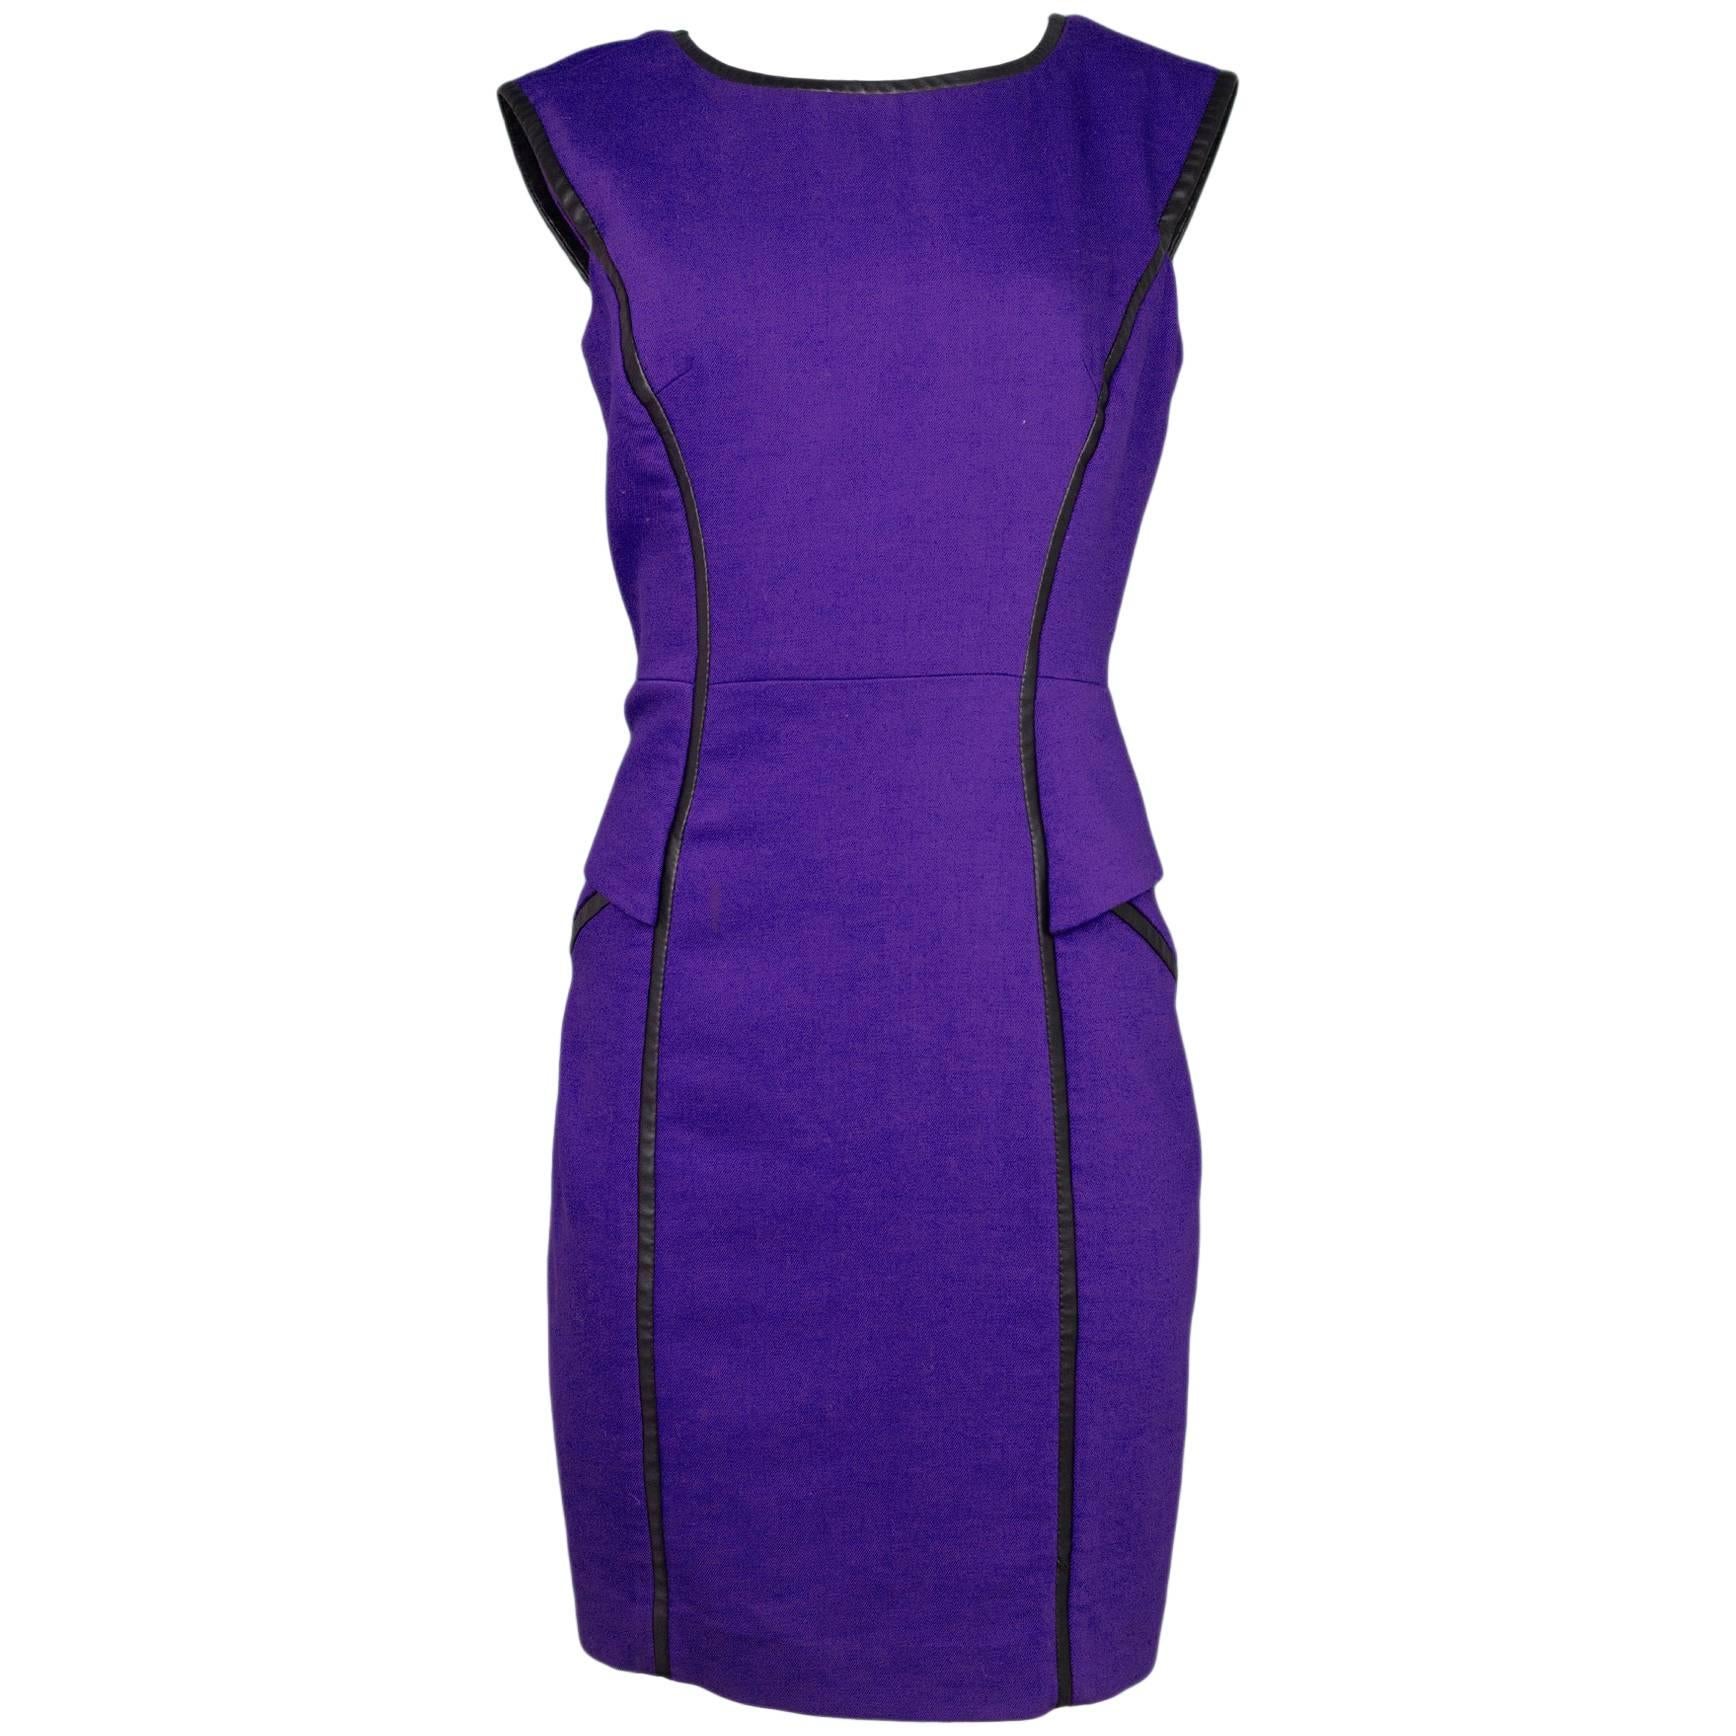 Milly Purple & Faux Leather Trim Dress Sz 10